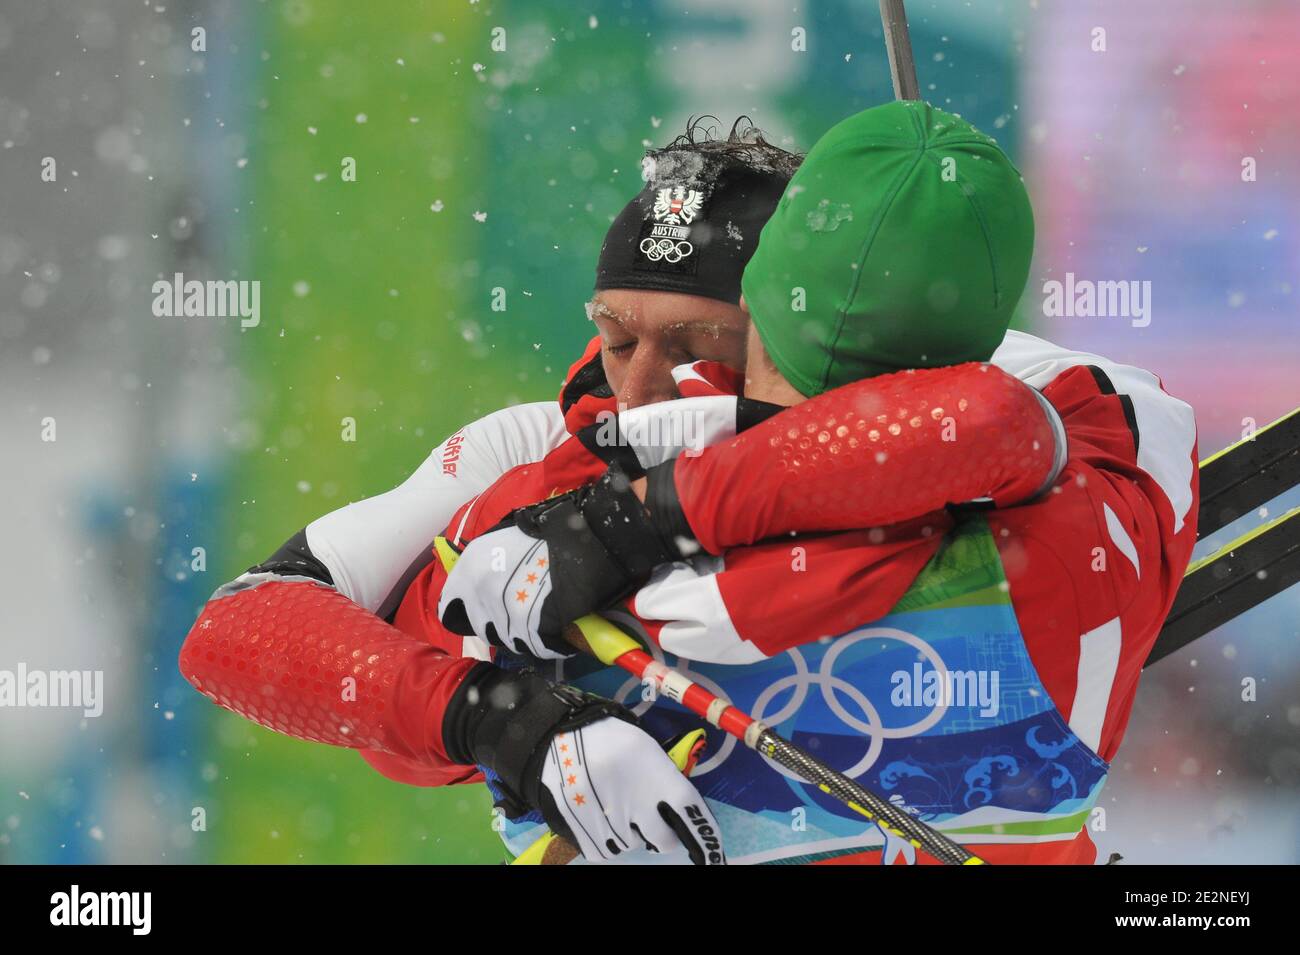 Christoph Sumann (posteriore) e Simon Eder abbracciano l'Austria dopo il relè 4x7,5 km di Biatlon Men dei Giochi Olimpici invernali di Vancouver 2010 XXI al Parco Olimpico di Whistler, Canada, il 26 febbraio 2010. Foto di Gouhier-Hahn-Nebinger/ABACAPRESS.COM Foto Stock